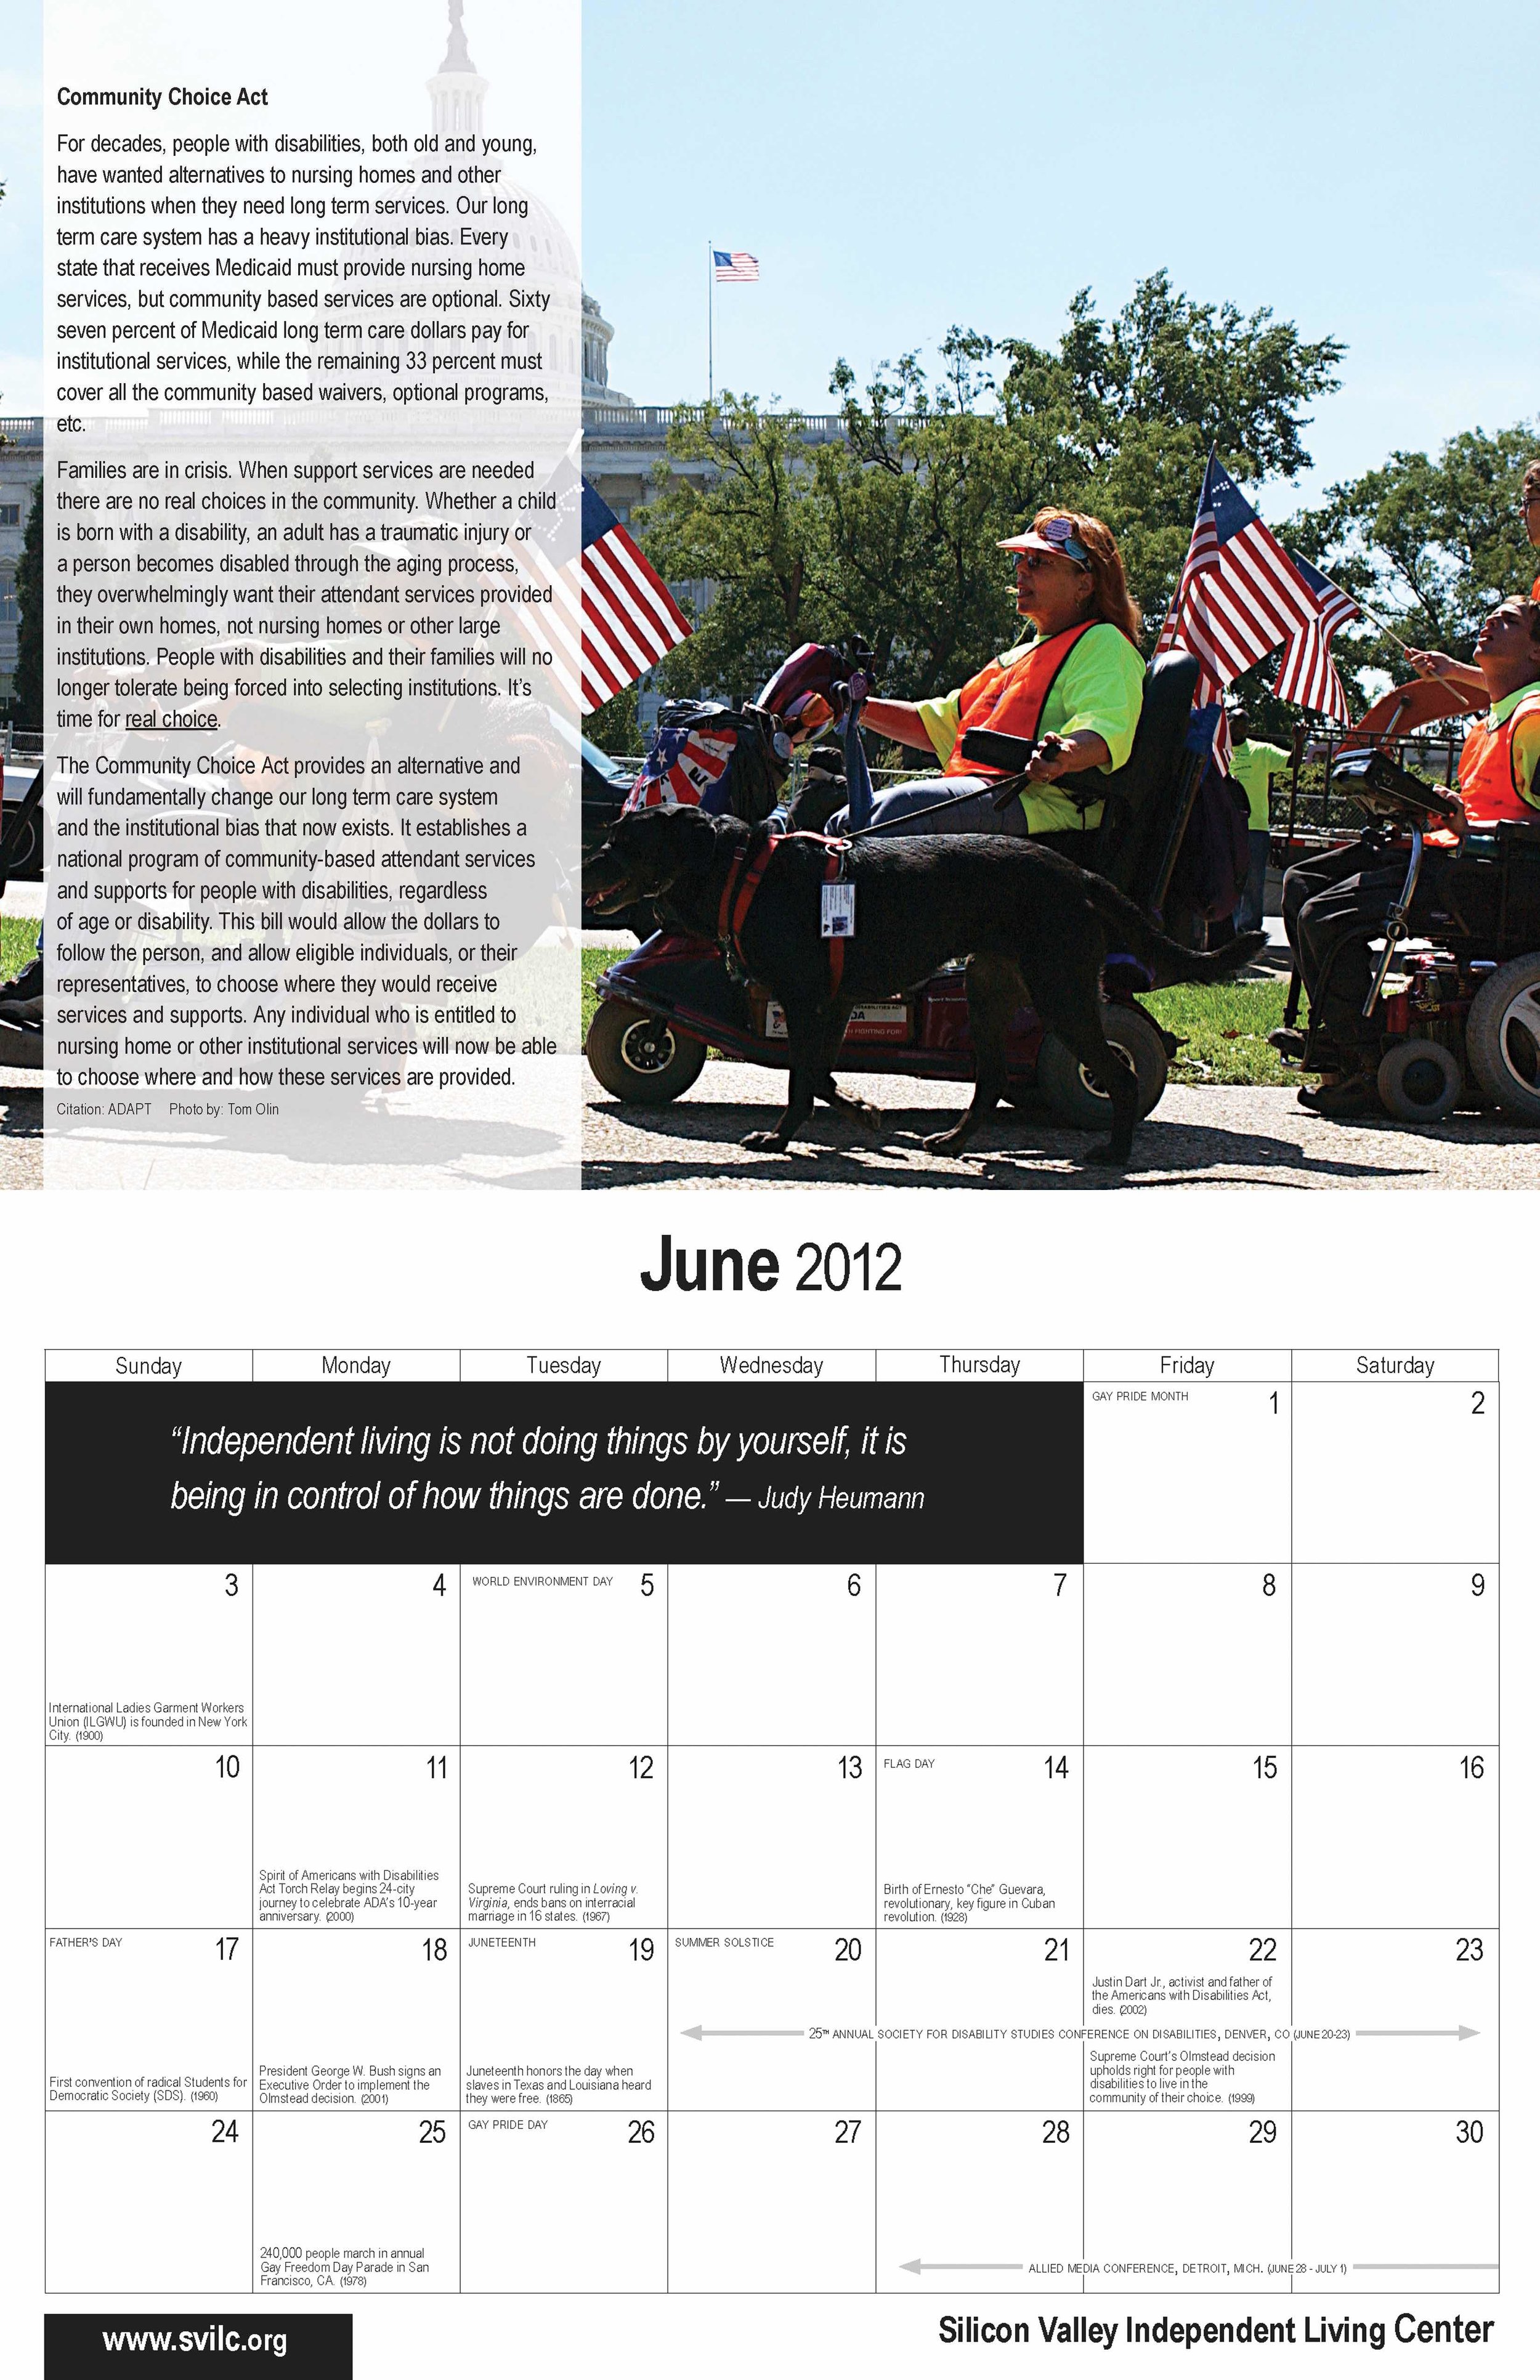   SVILC 2012 Calendar  June spread 